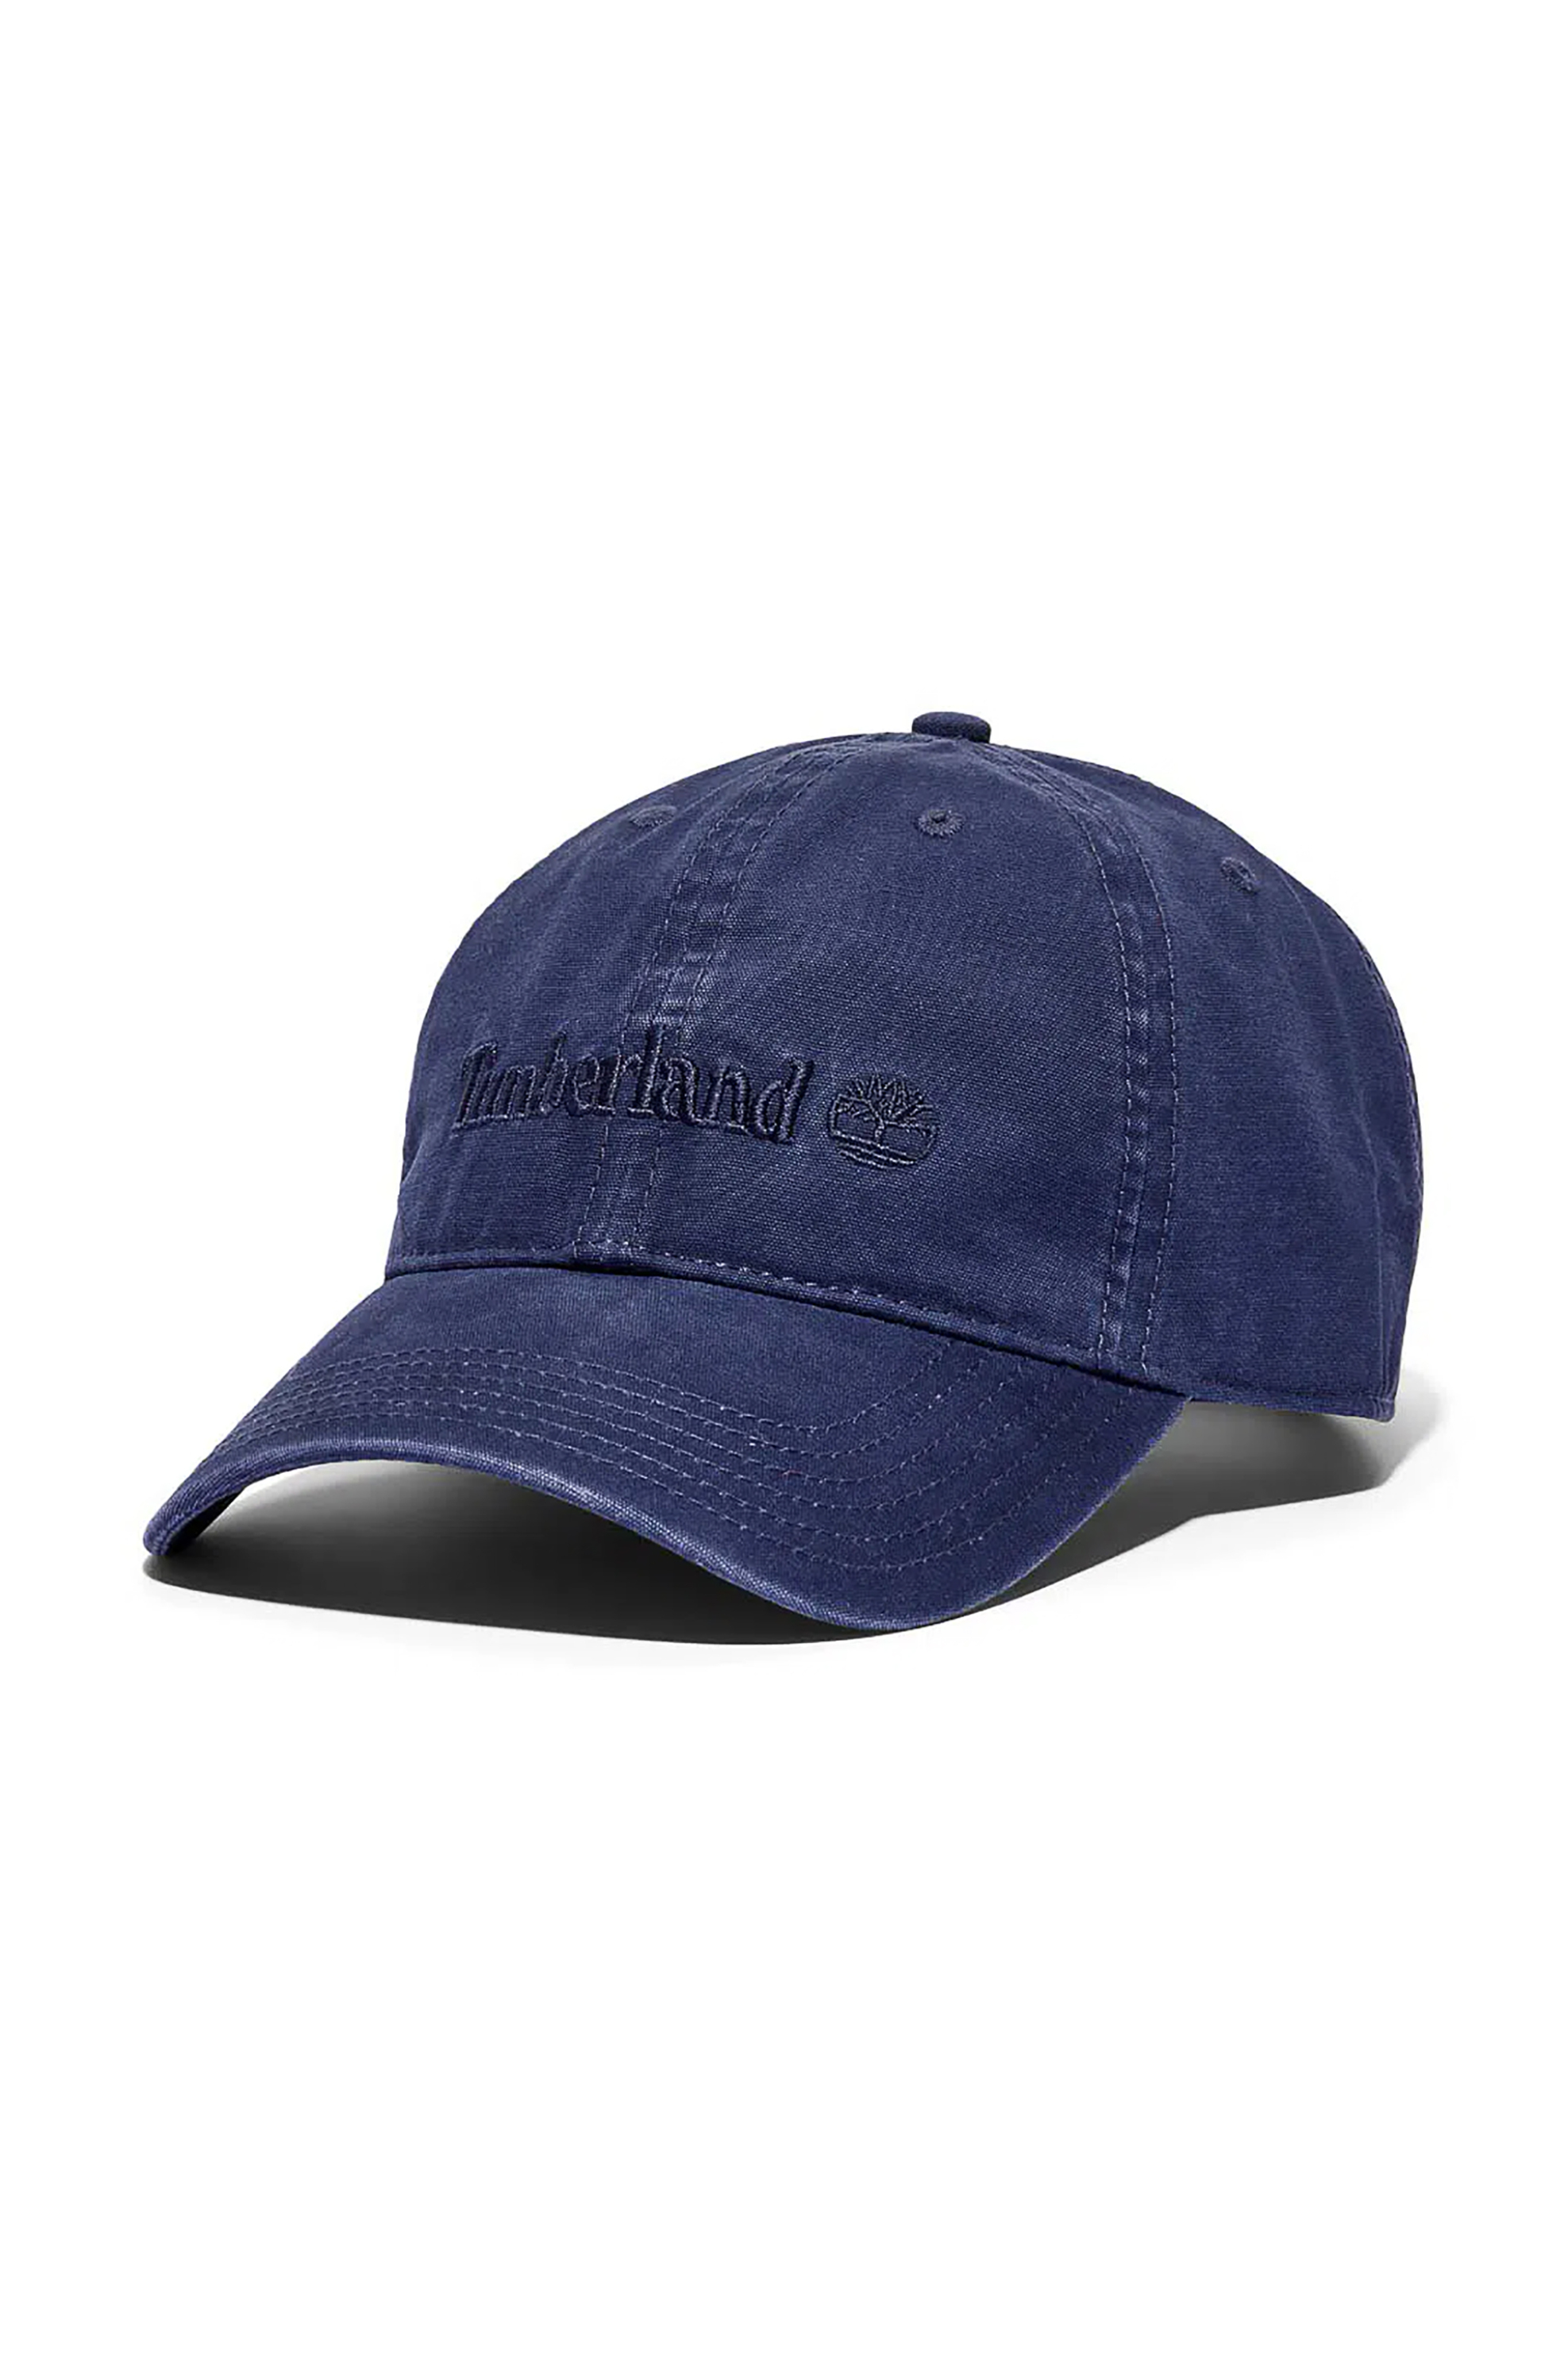 Ανδρική Μόδα > Ανδρικά Αξεσουάρ > Ανδρικά Καπέλα & Σκούφοι Timberland ανδρικό καπελο jockey με κεντημένο λογότυπο "Cooper Hill" - TB0A1F544511 Μπλε Σκούρο